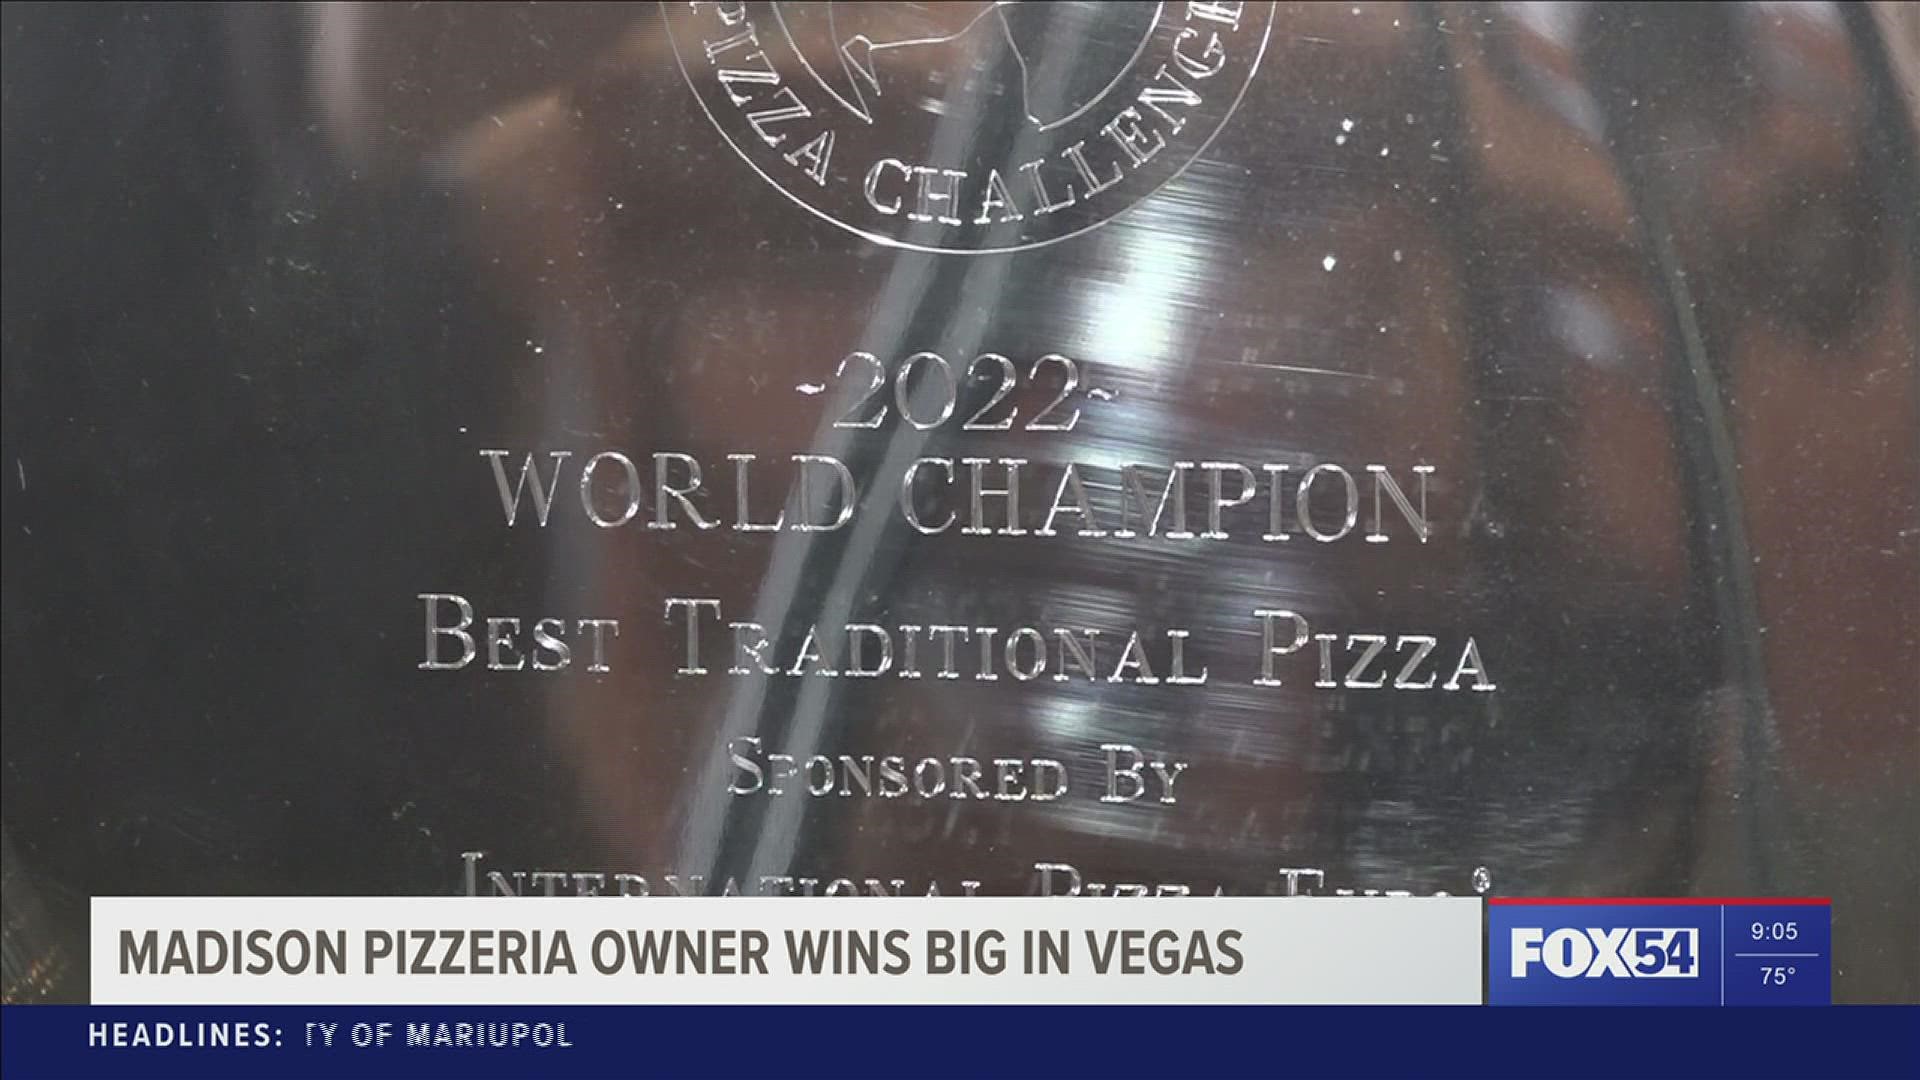 Pizzeria owner wins big in Las Vegas